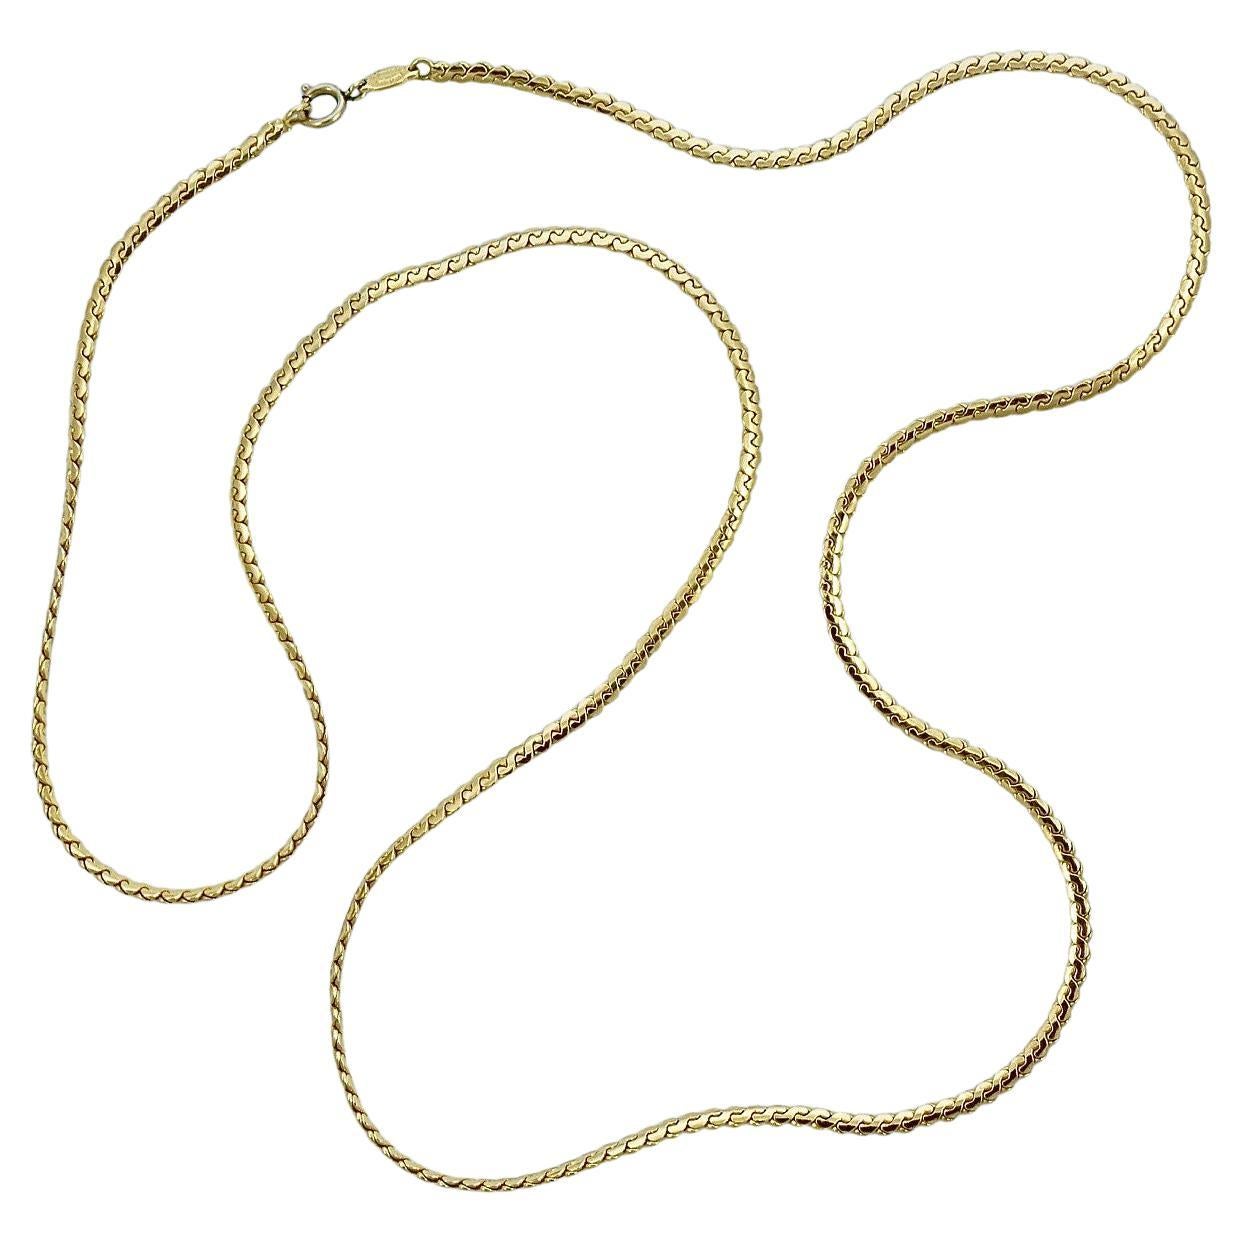 Grosse Deutschland Lange vergoldete Serpentine Kette Halskette circa 1980s